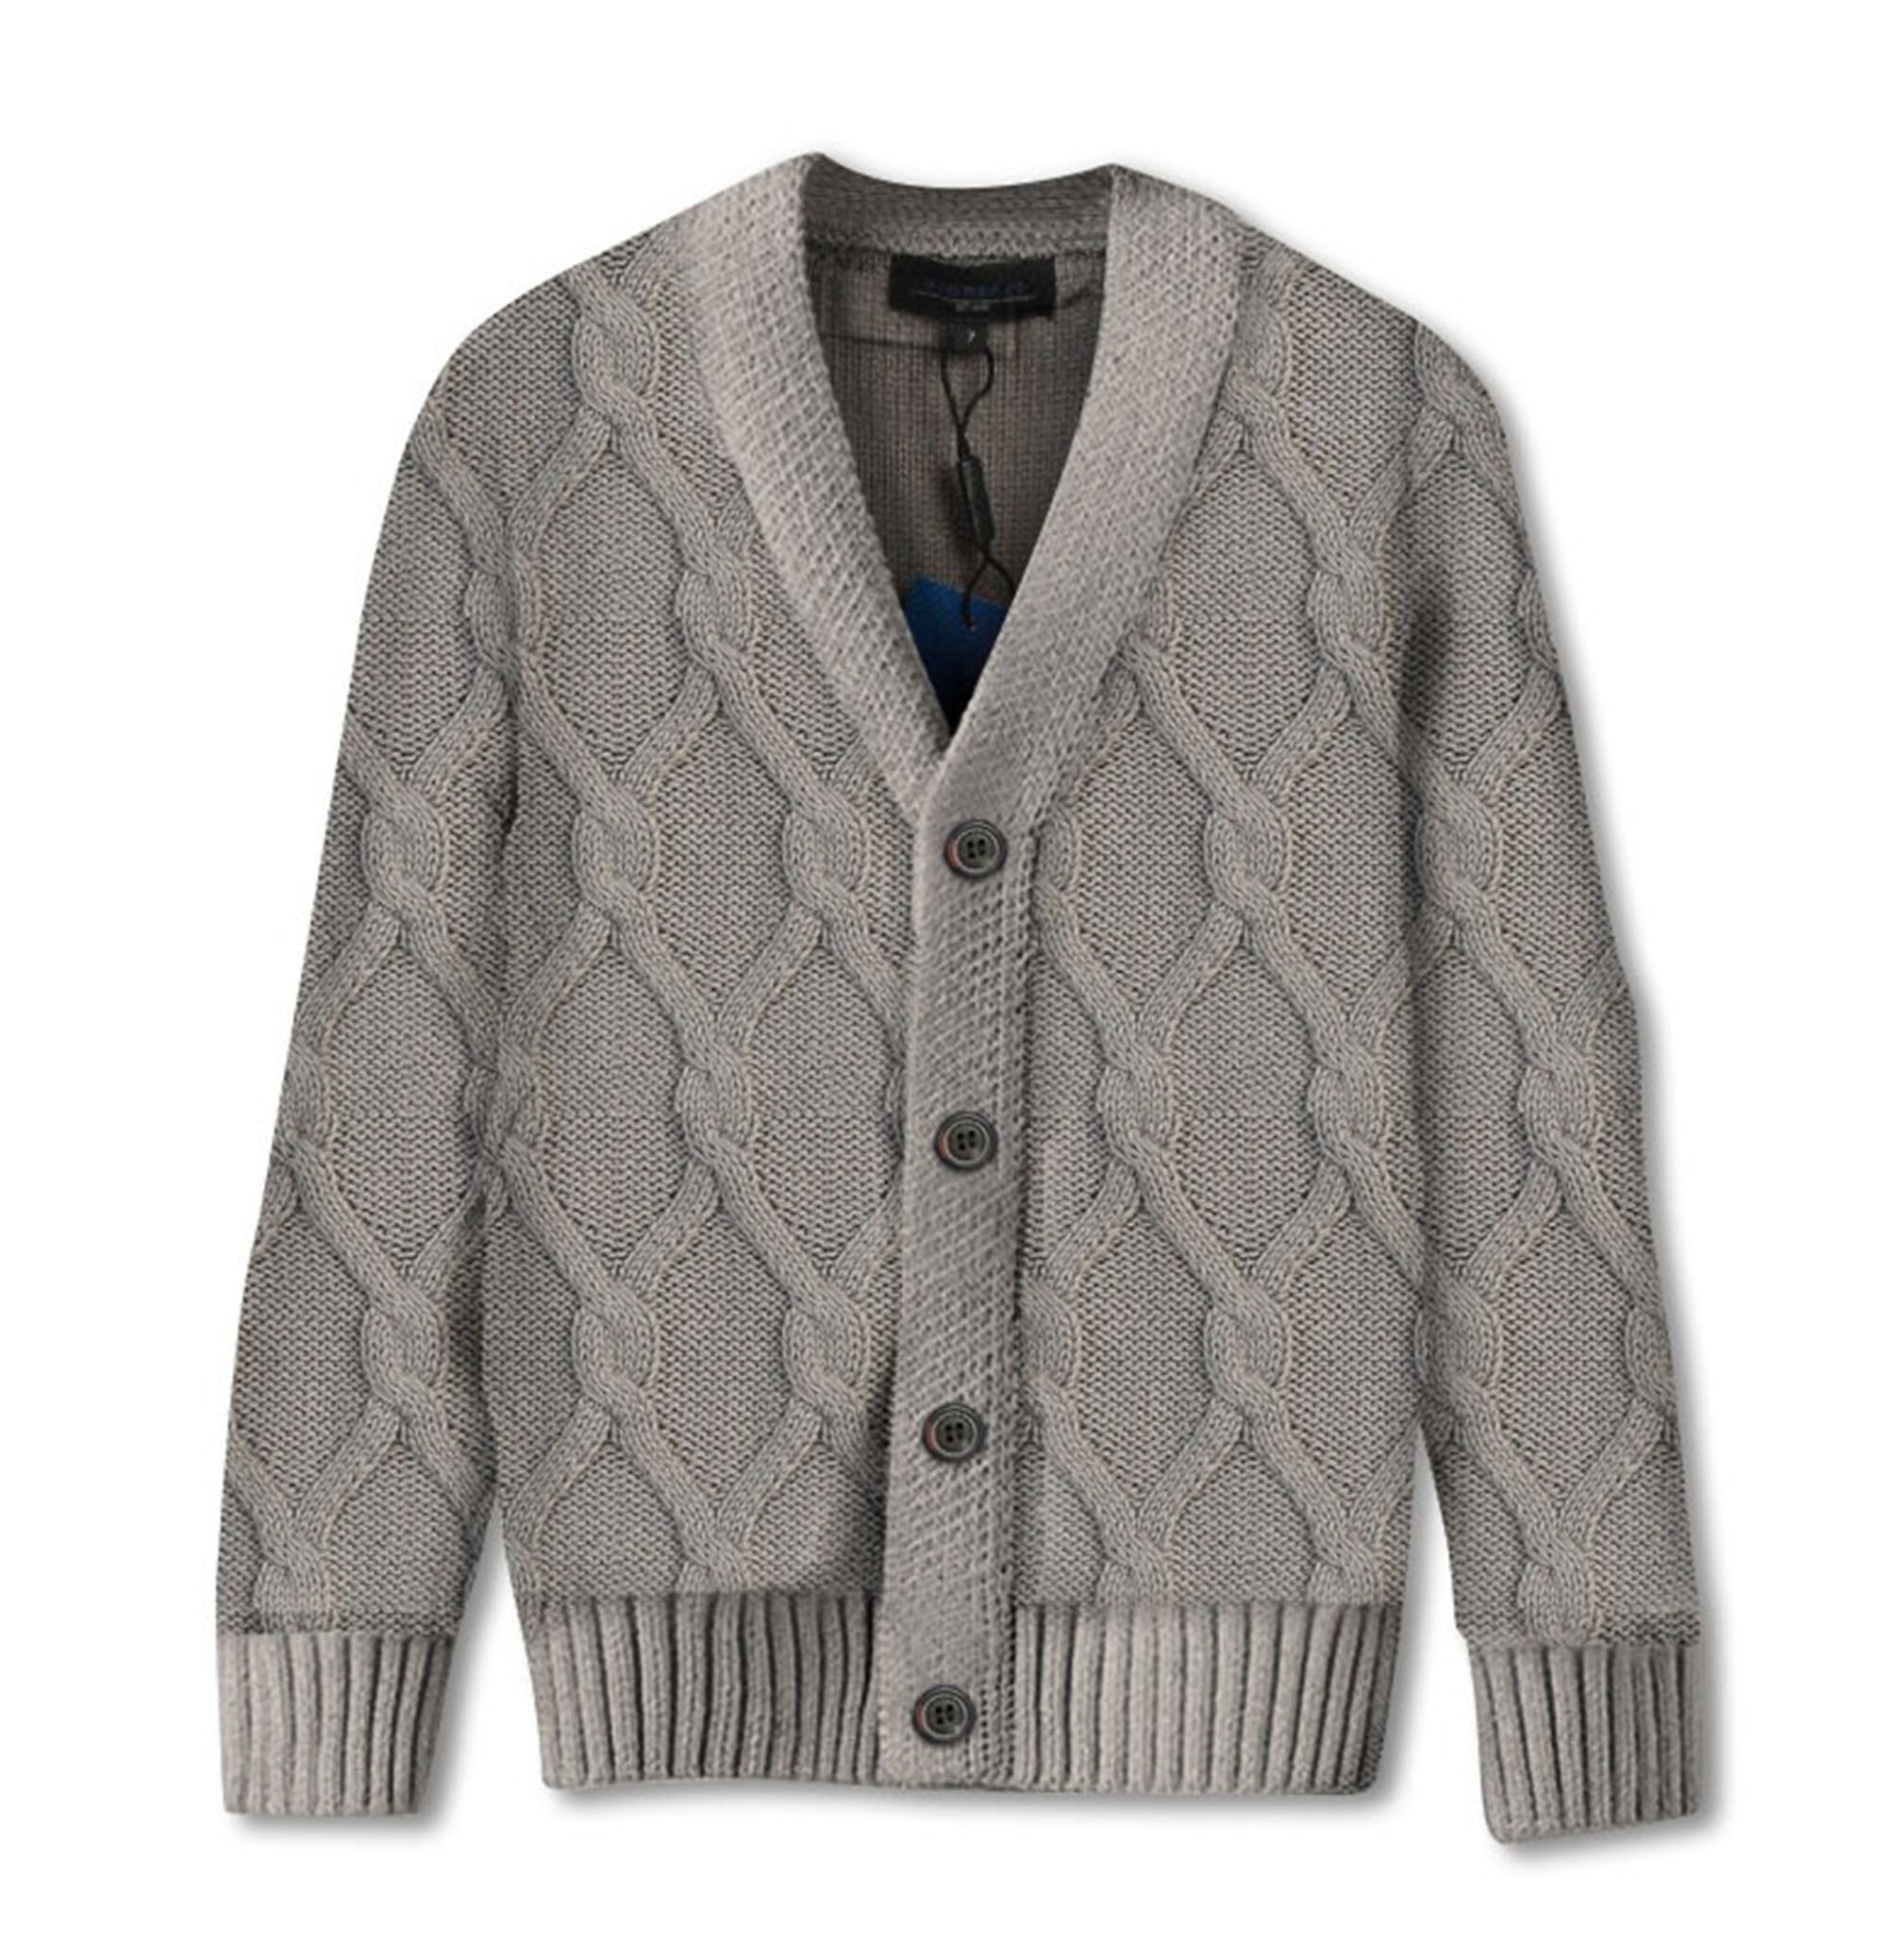 Gioberti Boy's Knitted Full Zip 100% Cotton Cardigan Sweater 